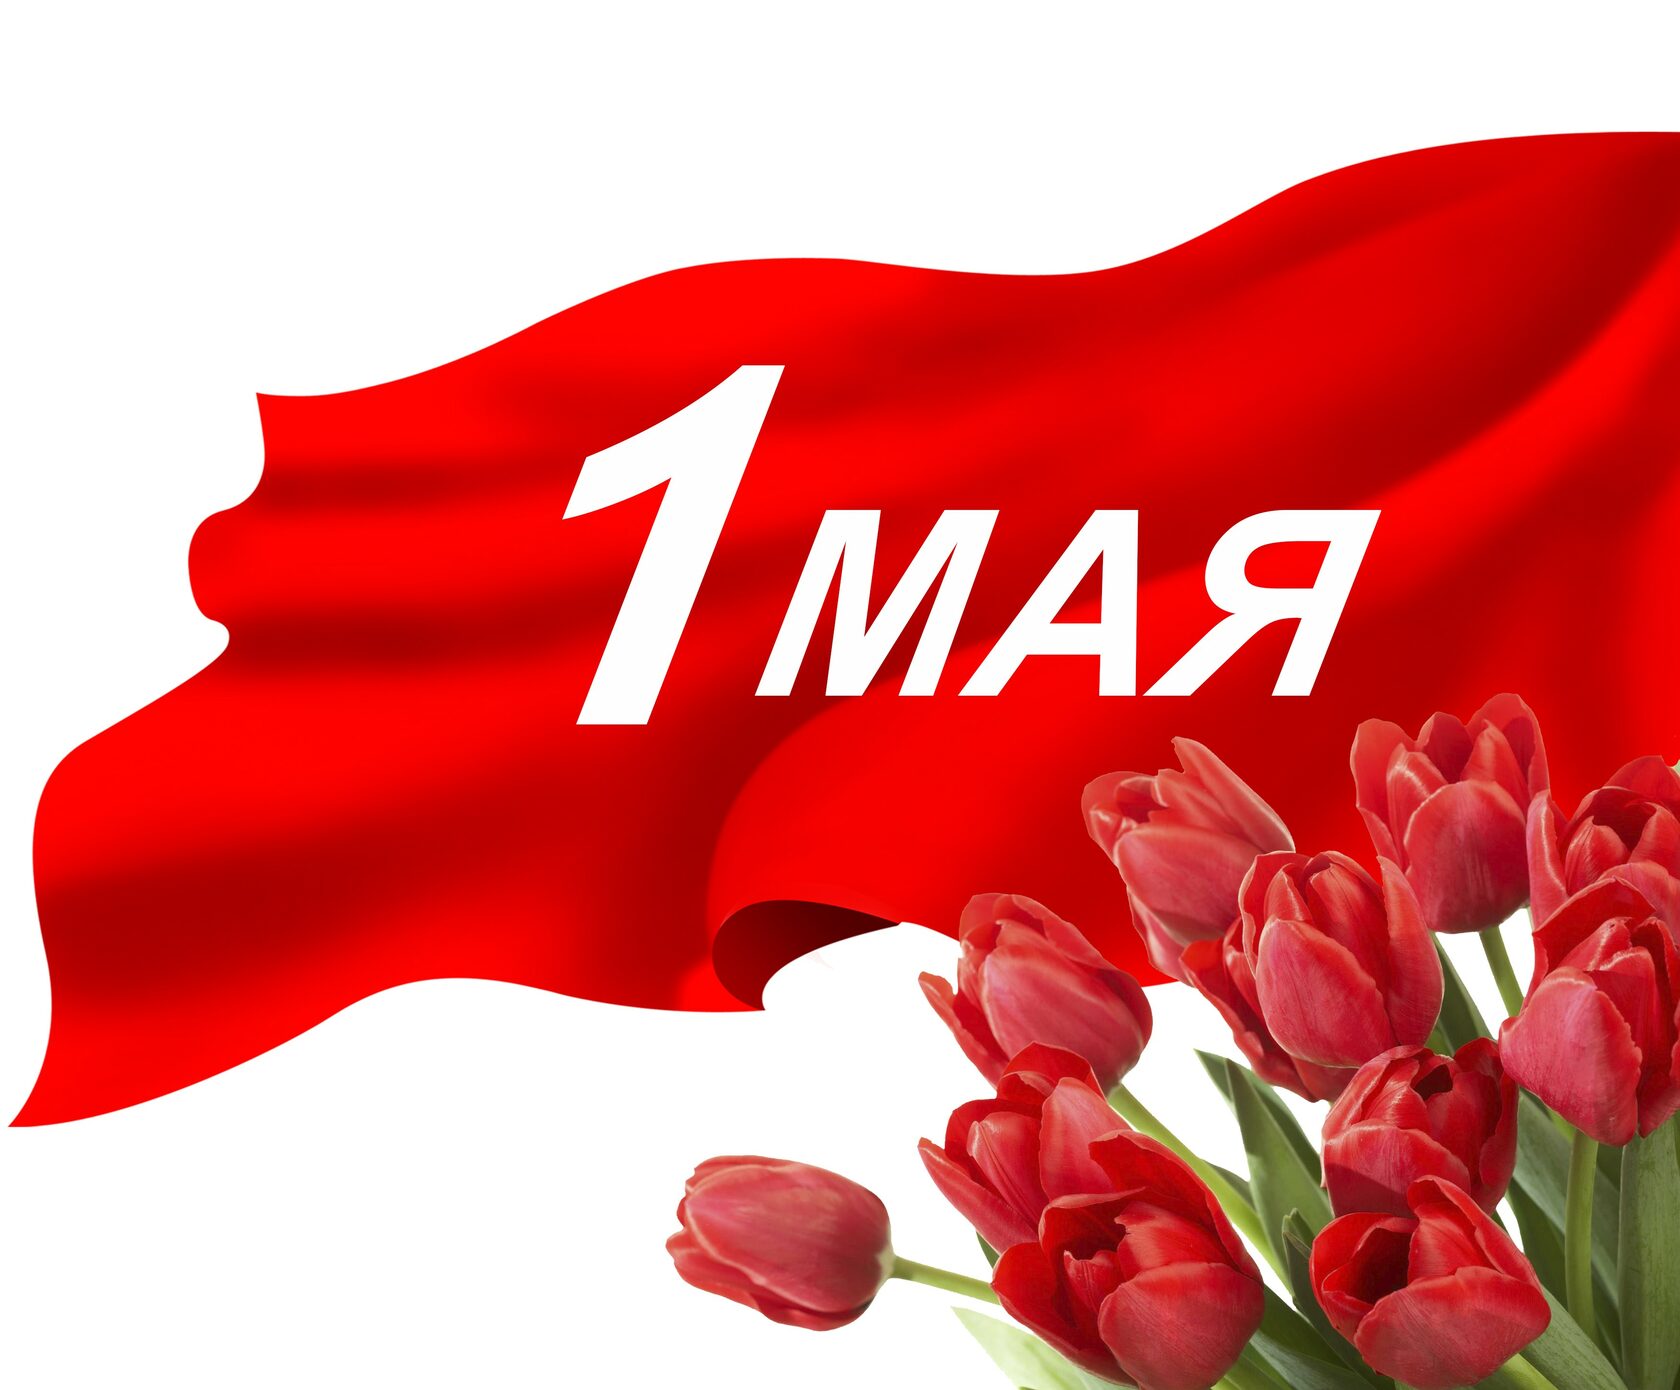 1 мая нерабочий. 1 Мая. Праздник день весны и труда 1 мая в Москве в красный площади.